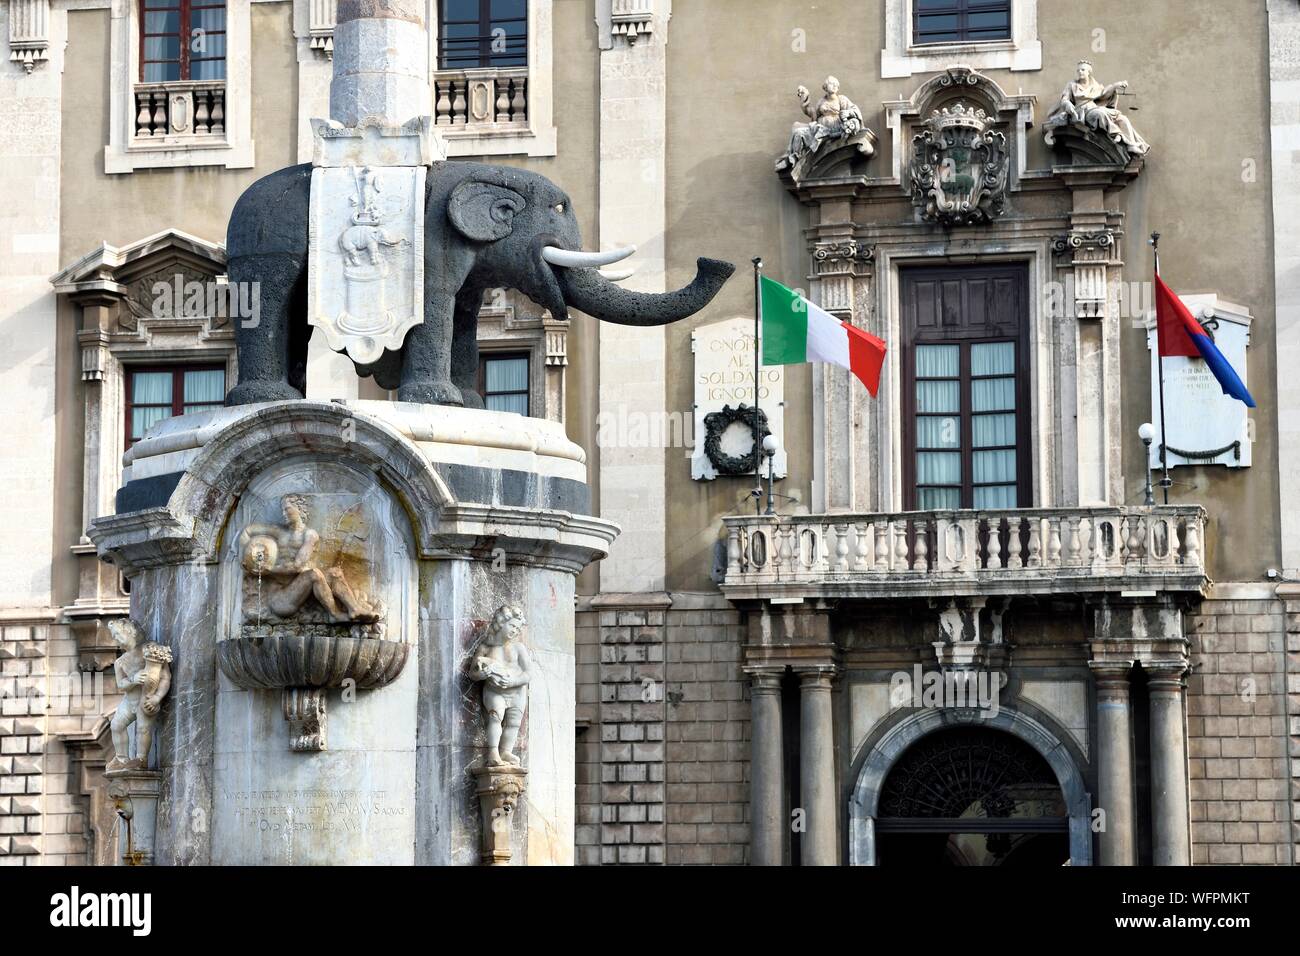 Italien, Sizilien, Catania, barocke Stadt als UNESCO-Weltkulturerbe, Piazza del Duomo, das 18. Jahrhundert Elefanten Brunnen mit Basalt und weißem Marmor ist das Symbol der Stadt Stockfoto